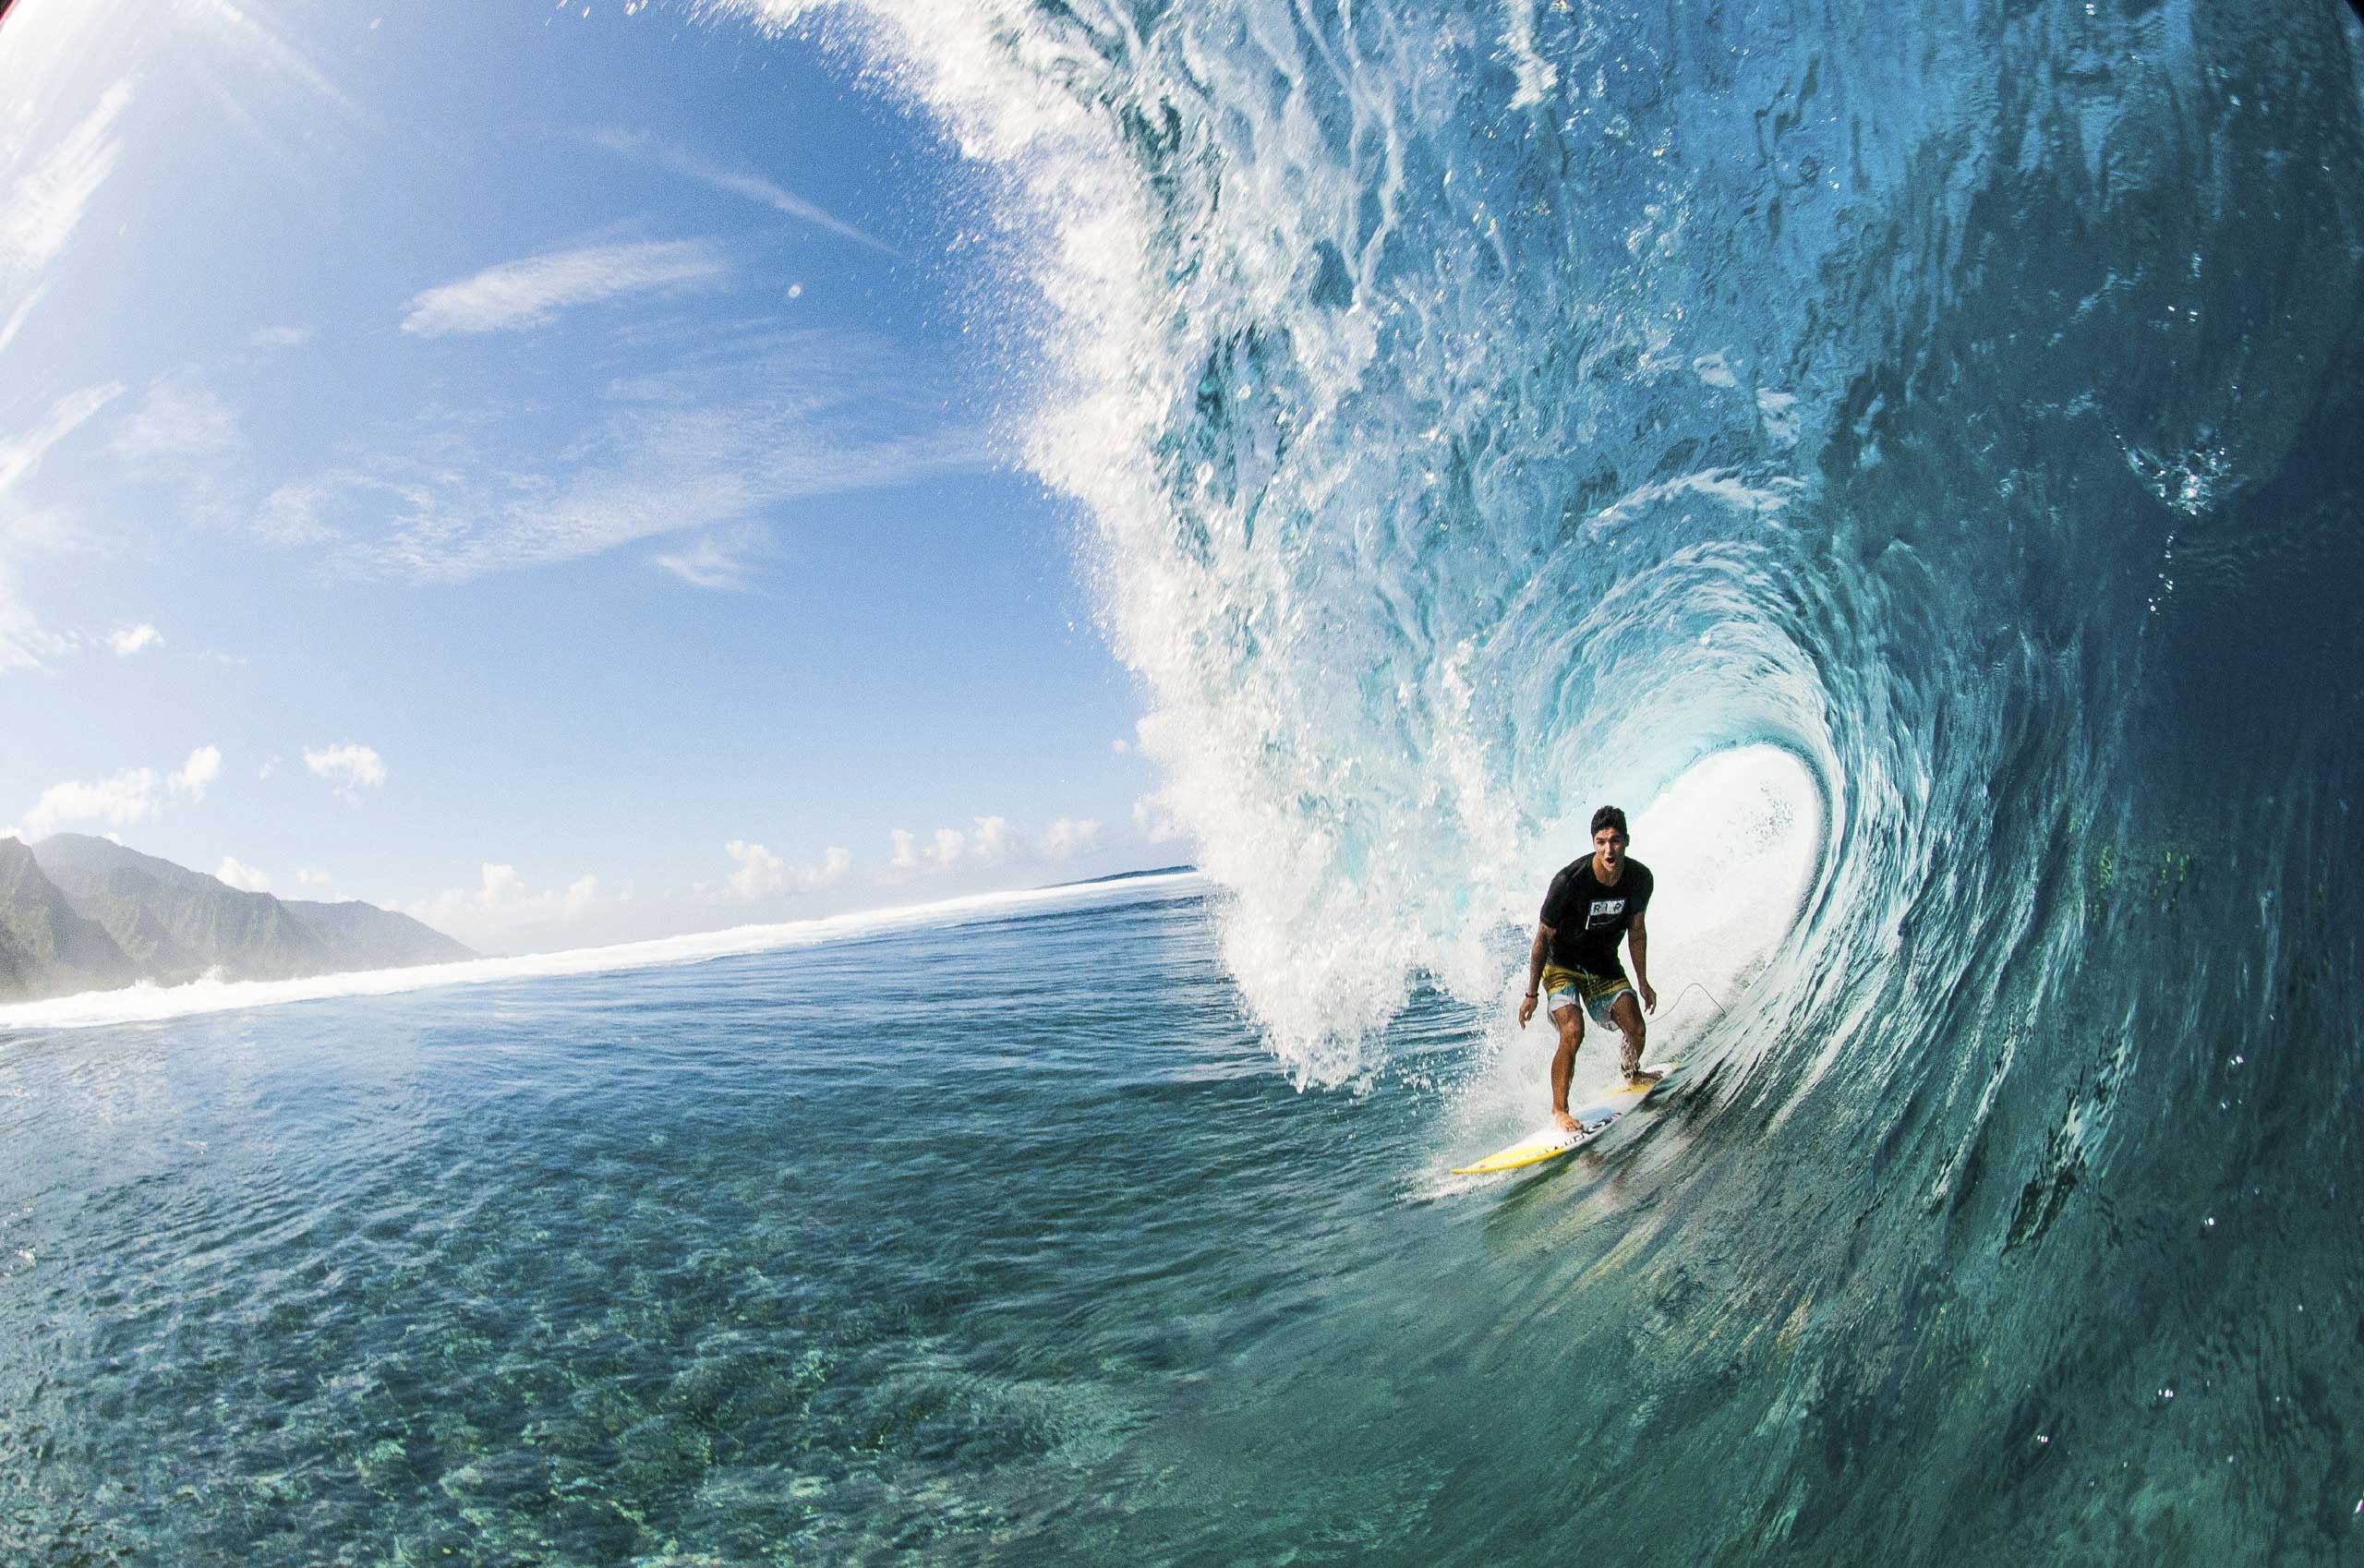 wallpaper hd gambar olahraga surfing